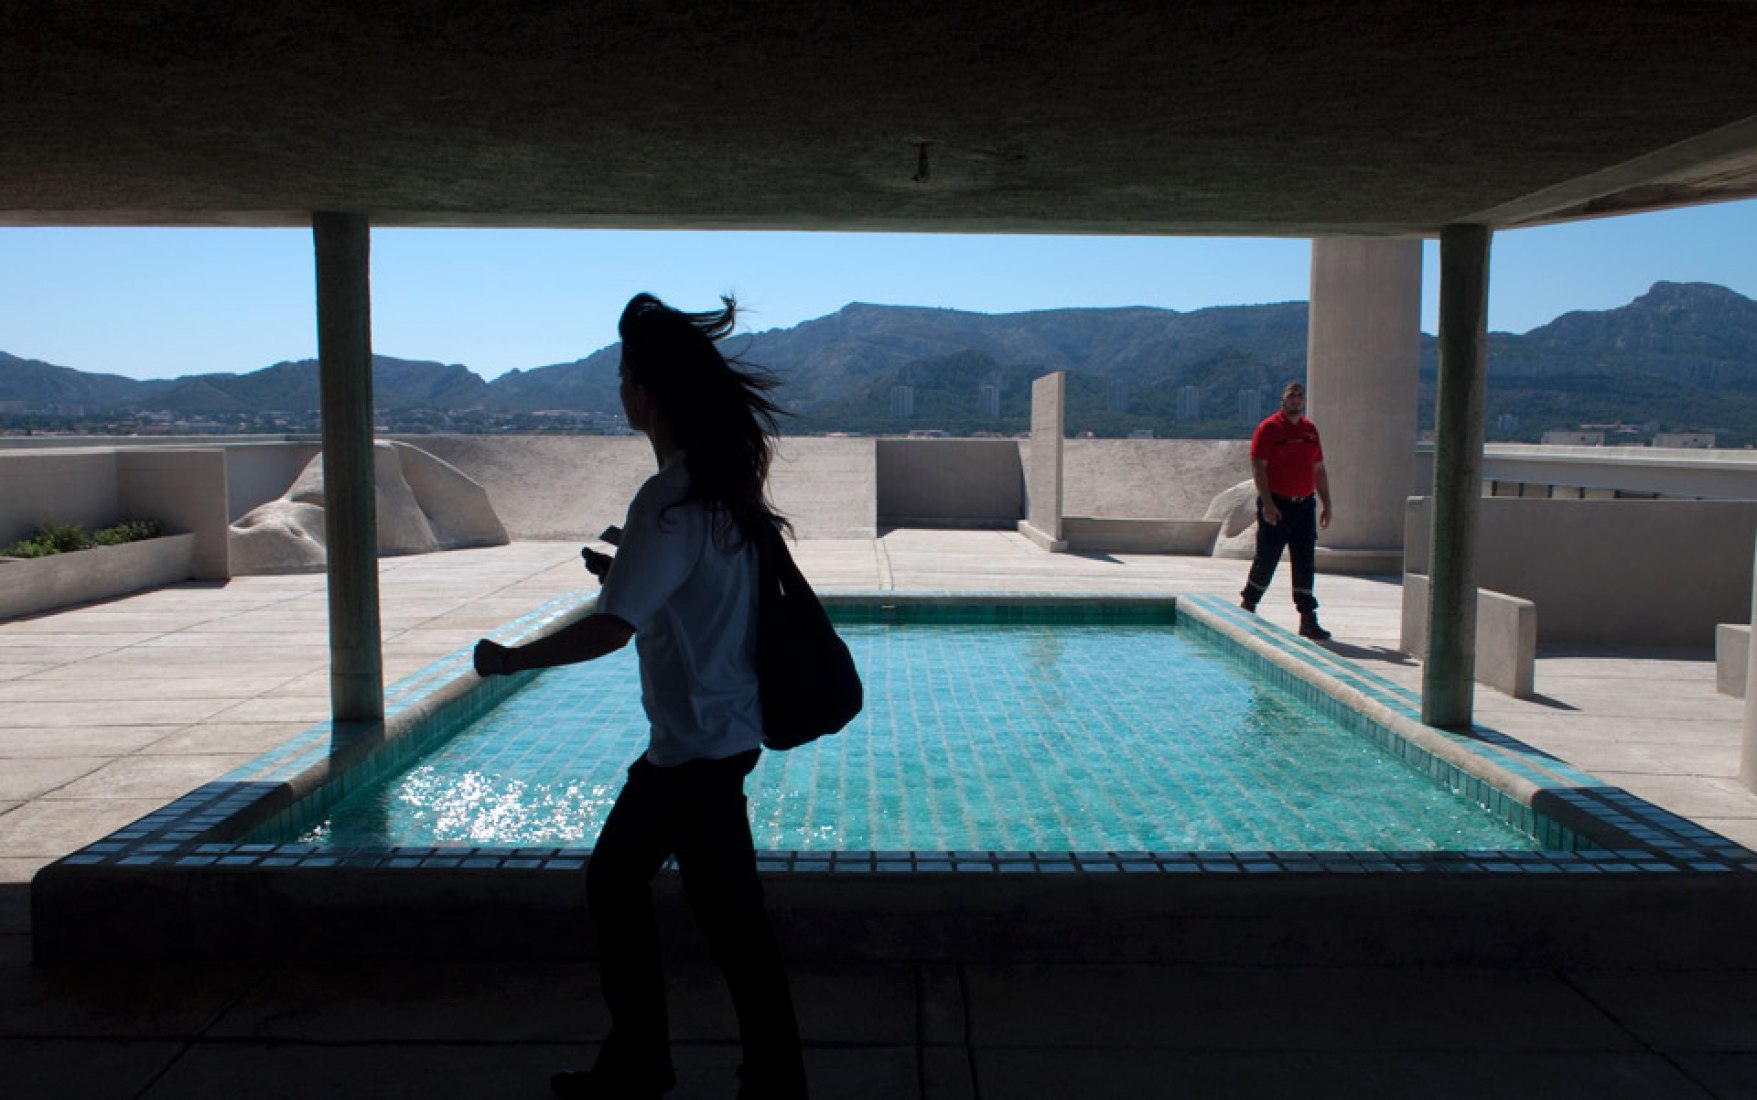 La Unidad de Habitación de Le Corbusier en en Marsella (1952) fue diseñada teniendo en cuenta las actividades del cuerpo, sus piscinas y terrazas, eran el orgullo de sus habitantes. Foto por Stephen Burrows. Revista Aeon.